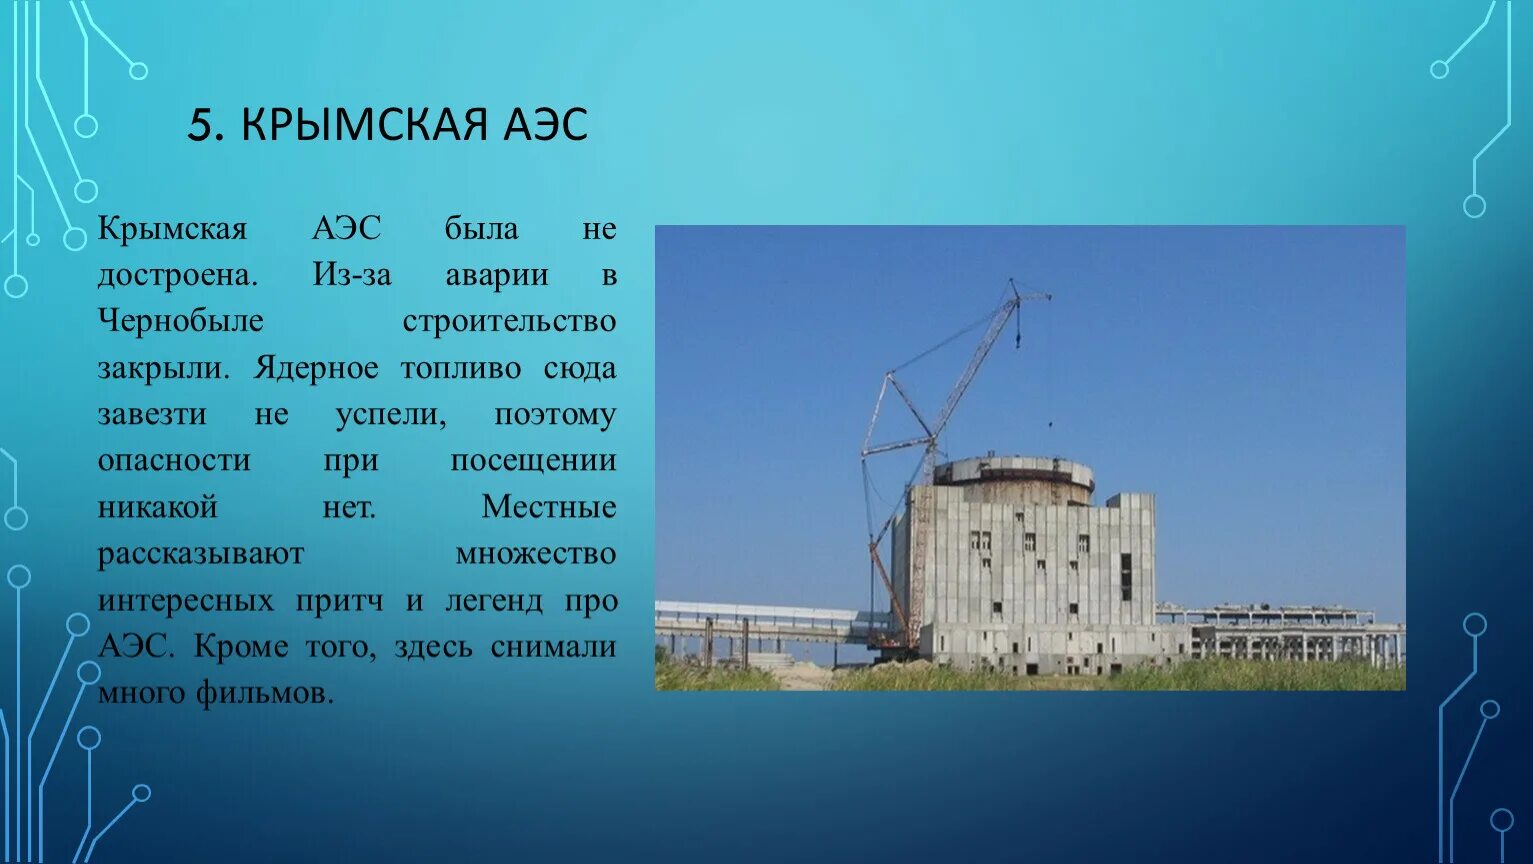 Где была построена атомная электростанция. Крымская АЭС В Щелкино проект. Крымская АЭС 2023. Недостроенная АЭС В Крыму. Азовская АЭС.